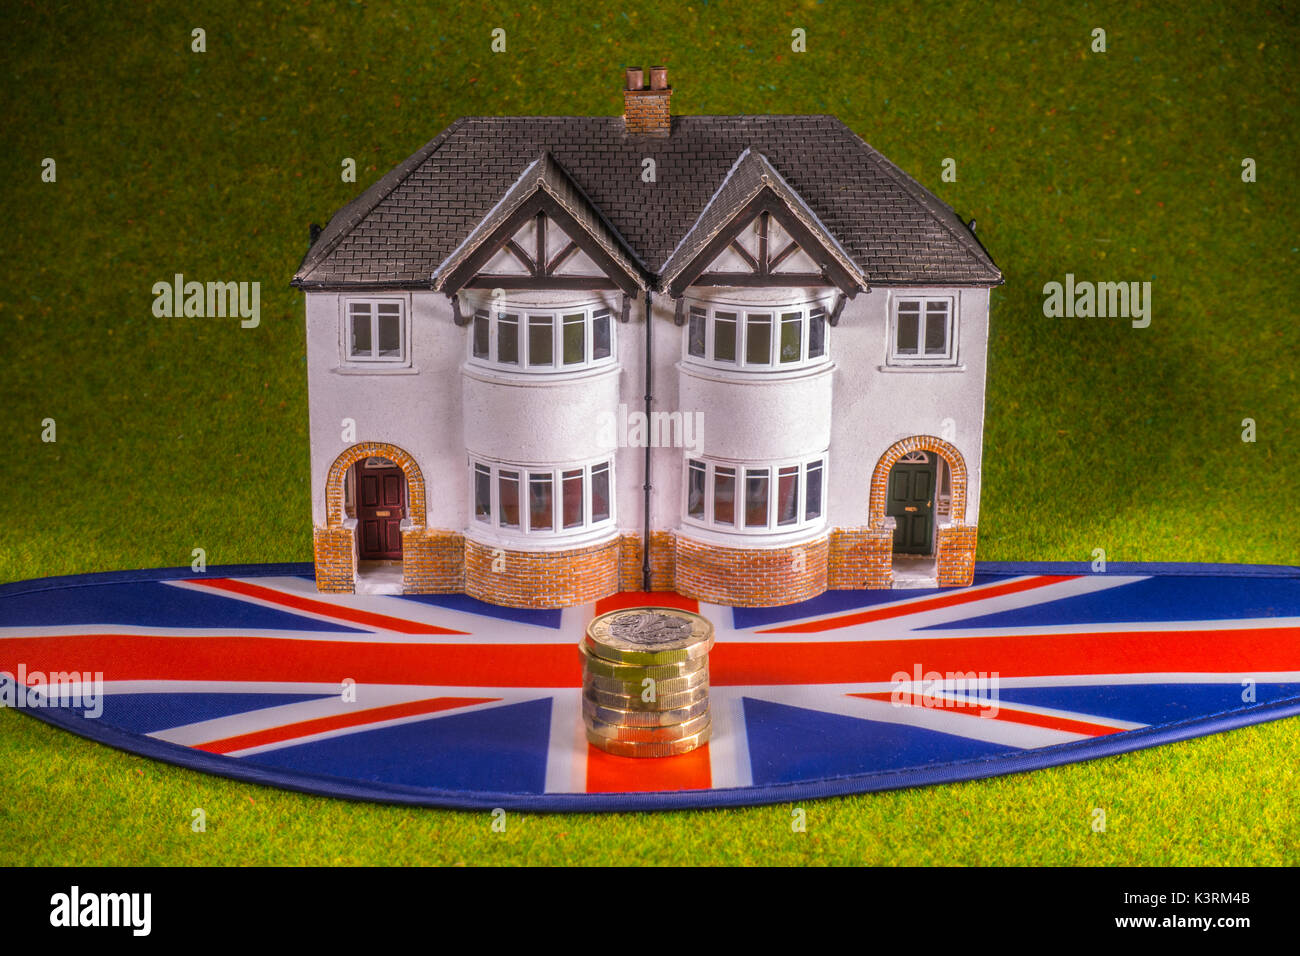 Modell Haus, Sterling Pound Münzen (mit neuen £1 Münze) und Union Jack, darzustellen, wie eine britische Zinserhöhung, Haus Kauf, Miete, Umzug, etc. Stockfoto